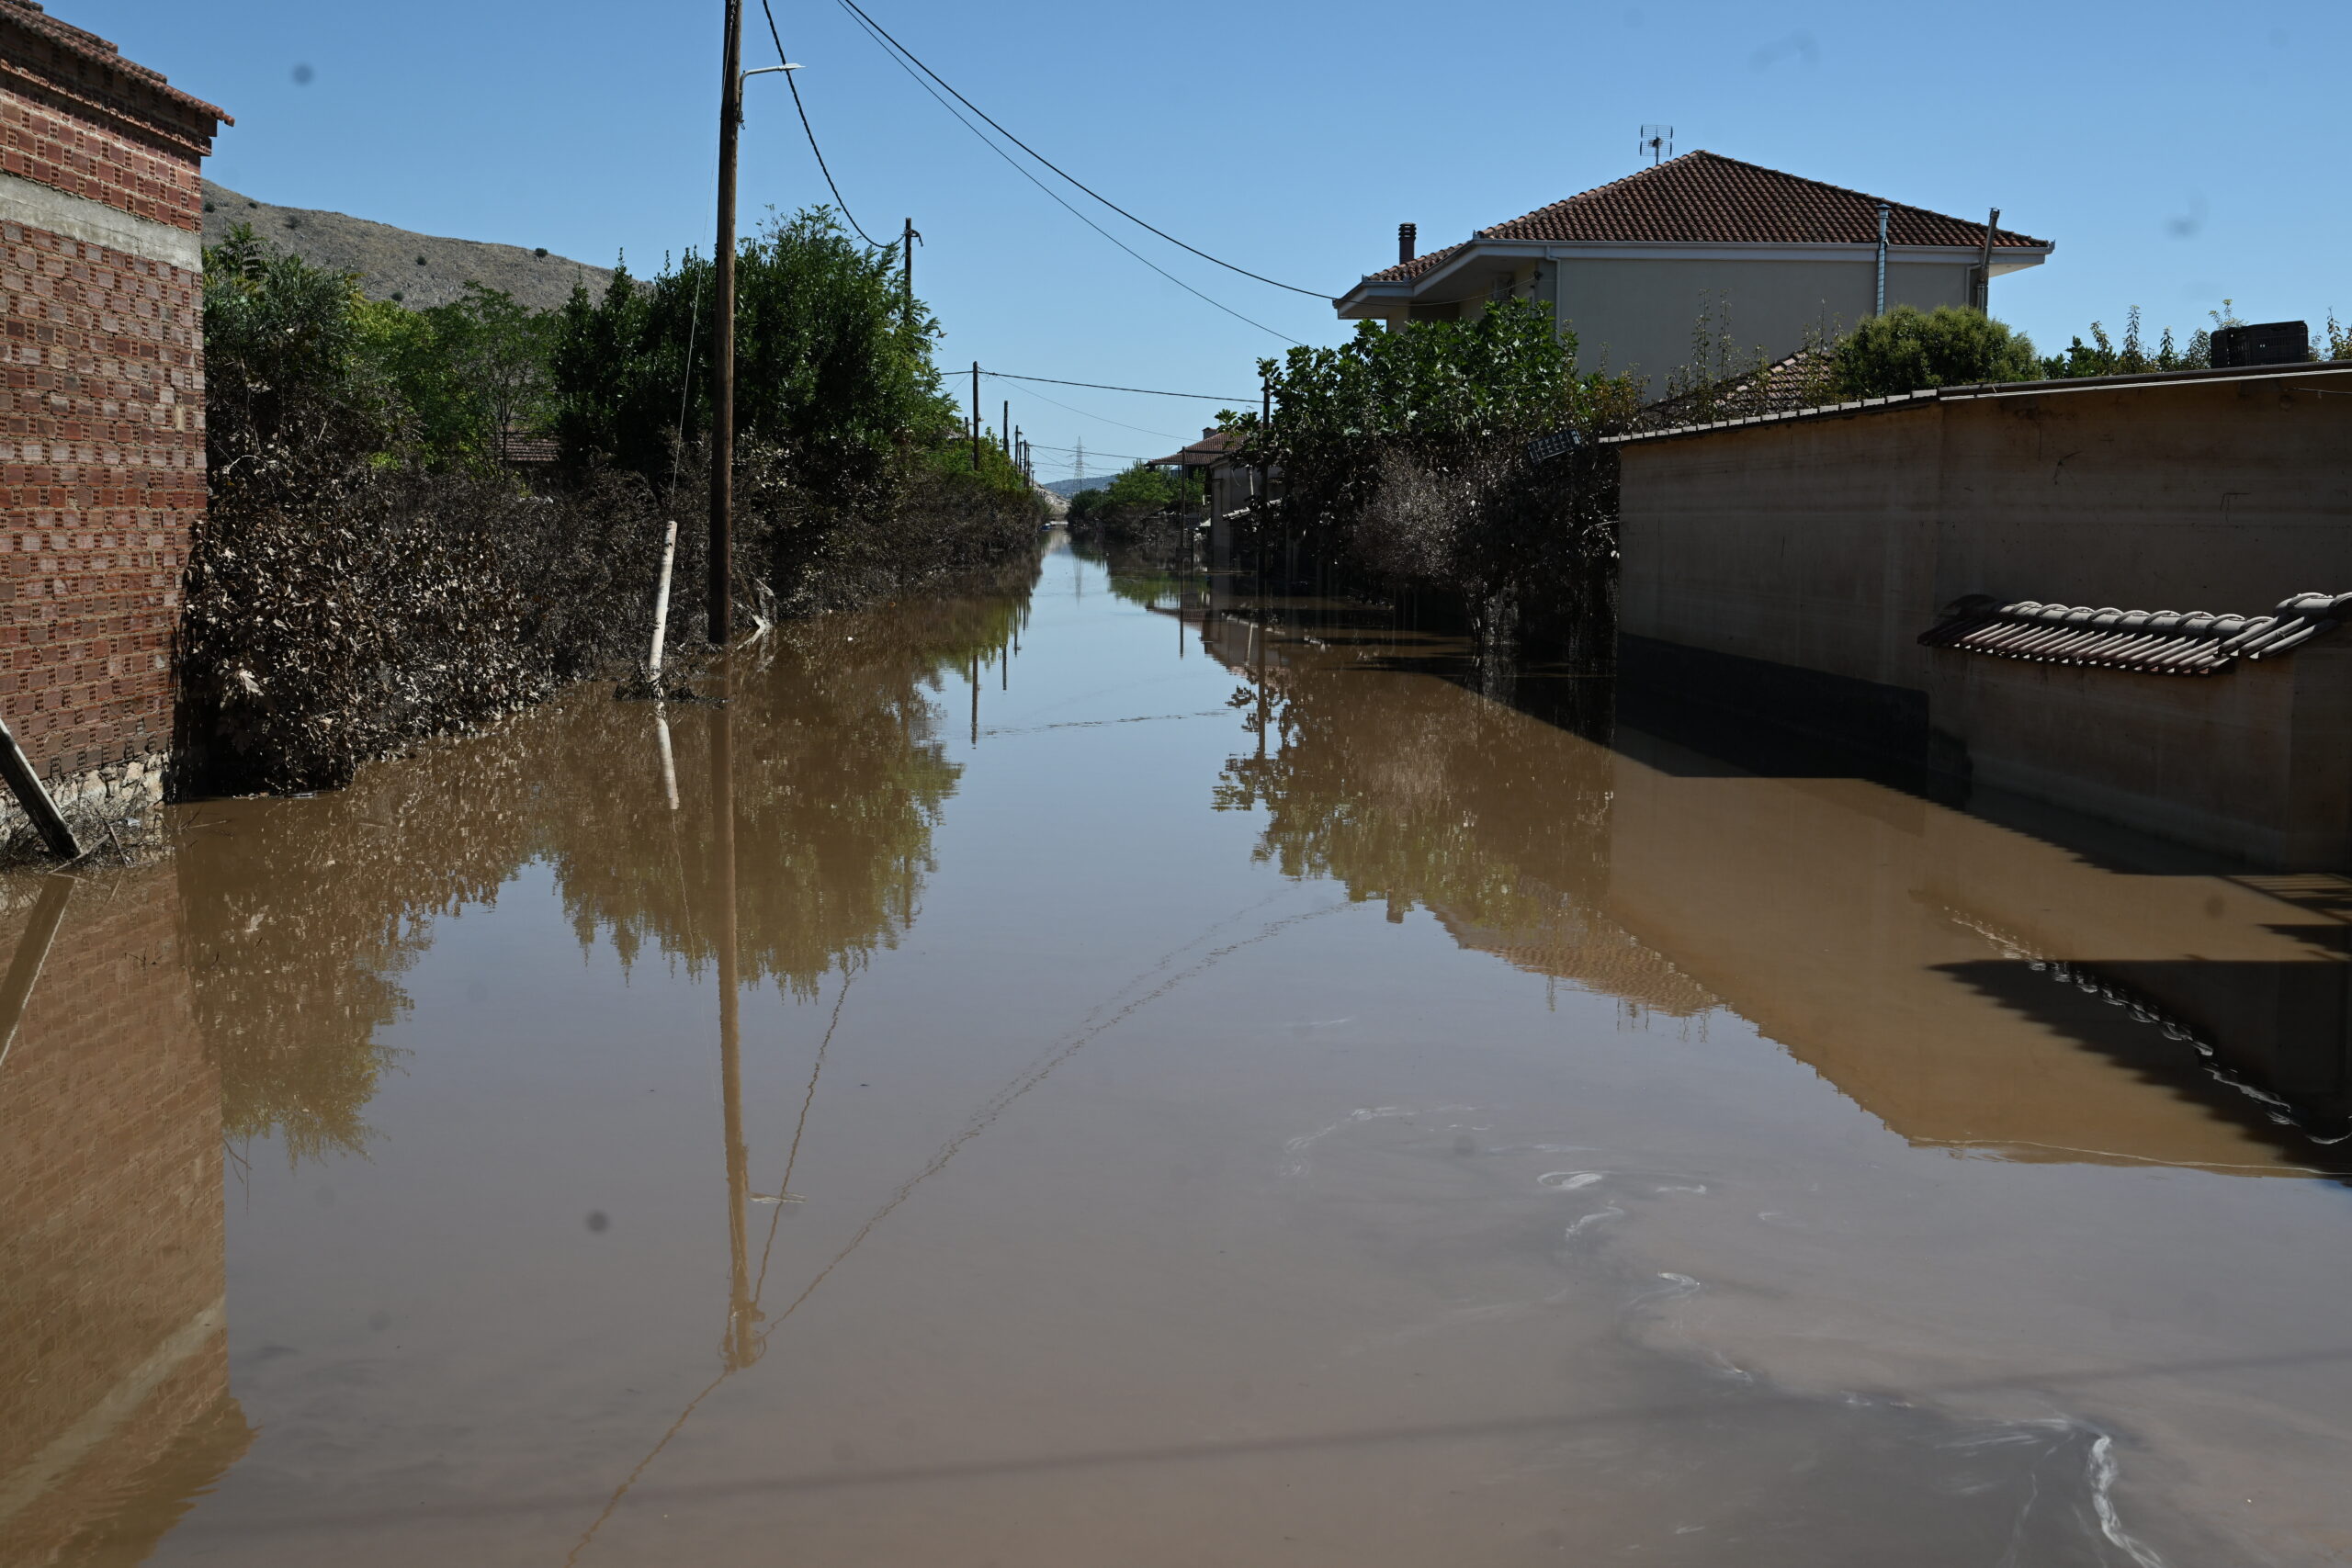 Αγώνας για την αποκατάσταση των ζημιών στη Θεσσαλία: Ακατάλληλο ακόμη το νερό, πολλά προβλήματα σε σιδηροδρομικό και οδικό δίκτυο